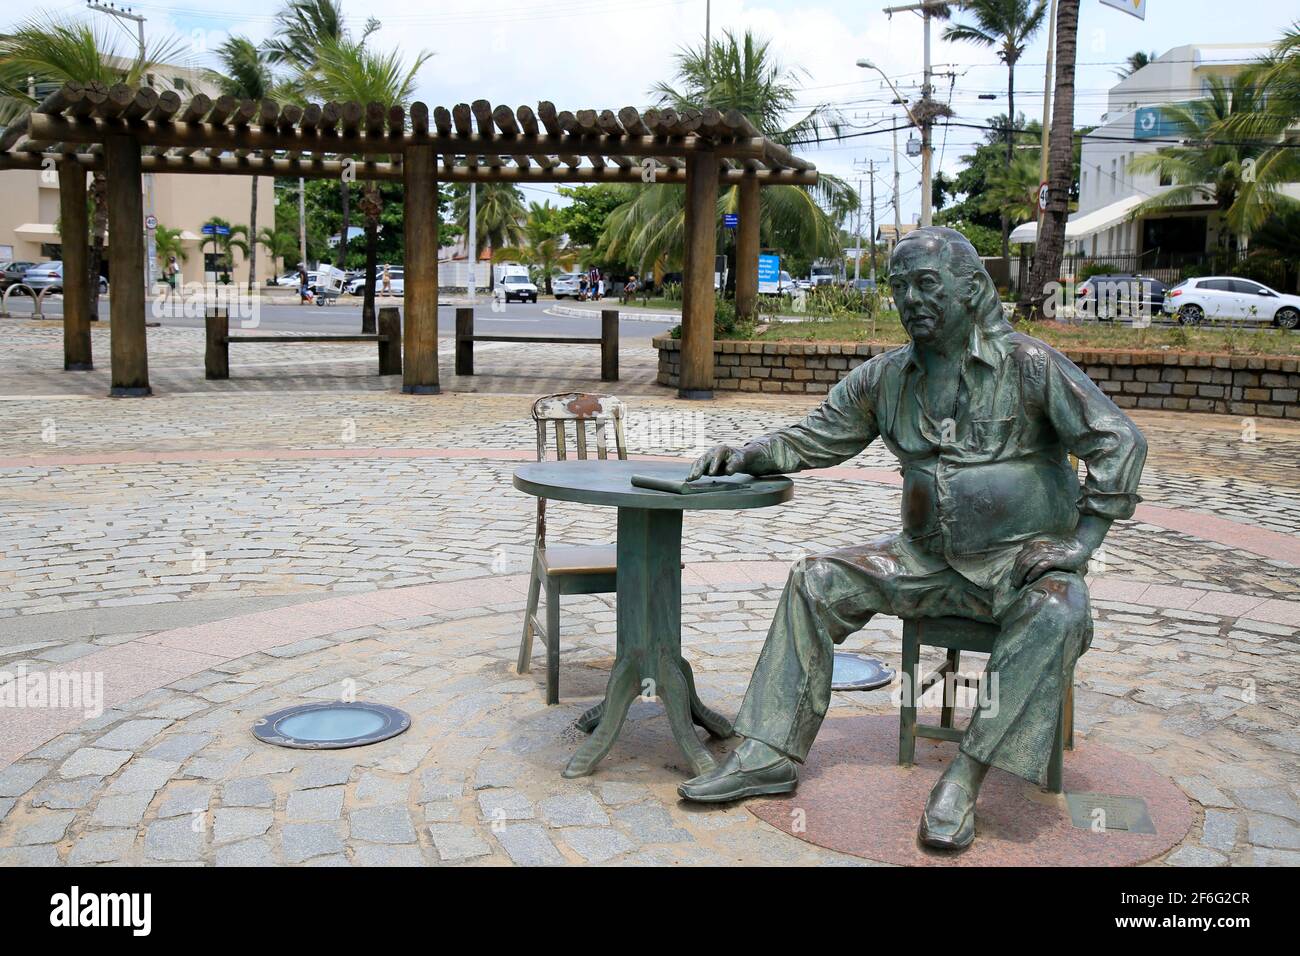 salvador, bahía, brasil - 21 de diciembre de 2020: La estatua del poeta Vinicius de Moraes se ve en el barrio de Itapua, en la ciudad de Salvador. *** Foto de stock